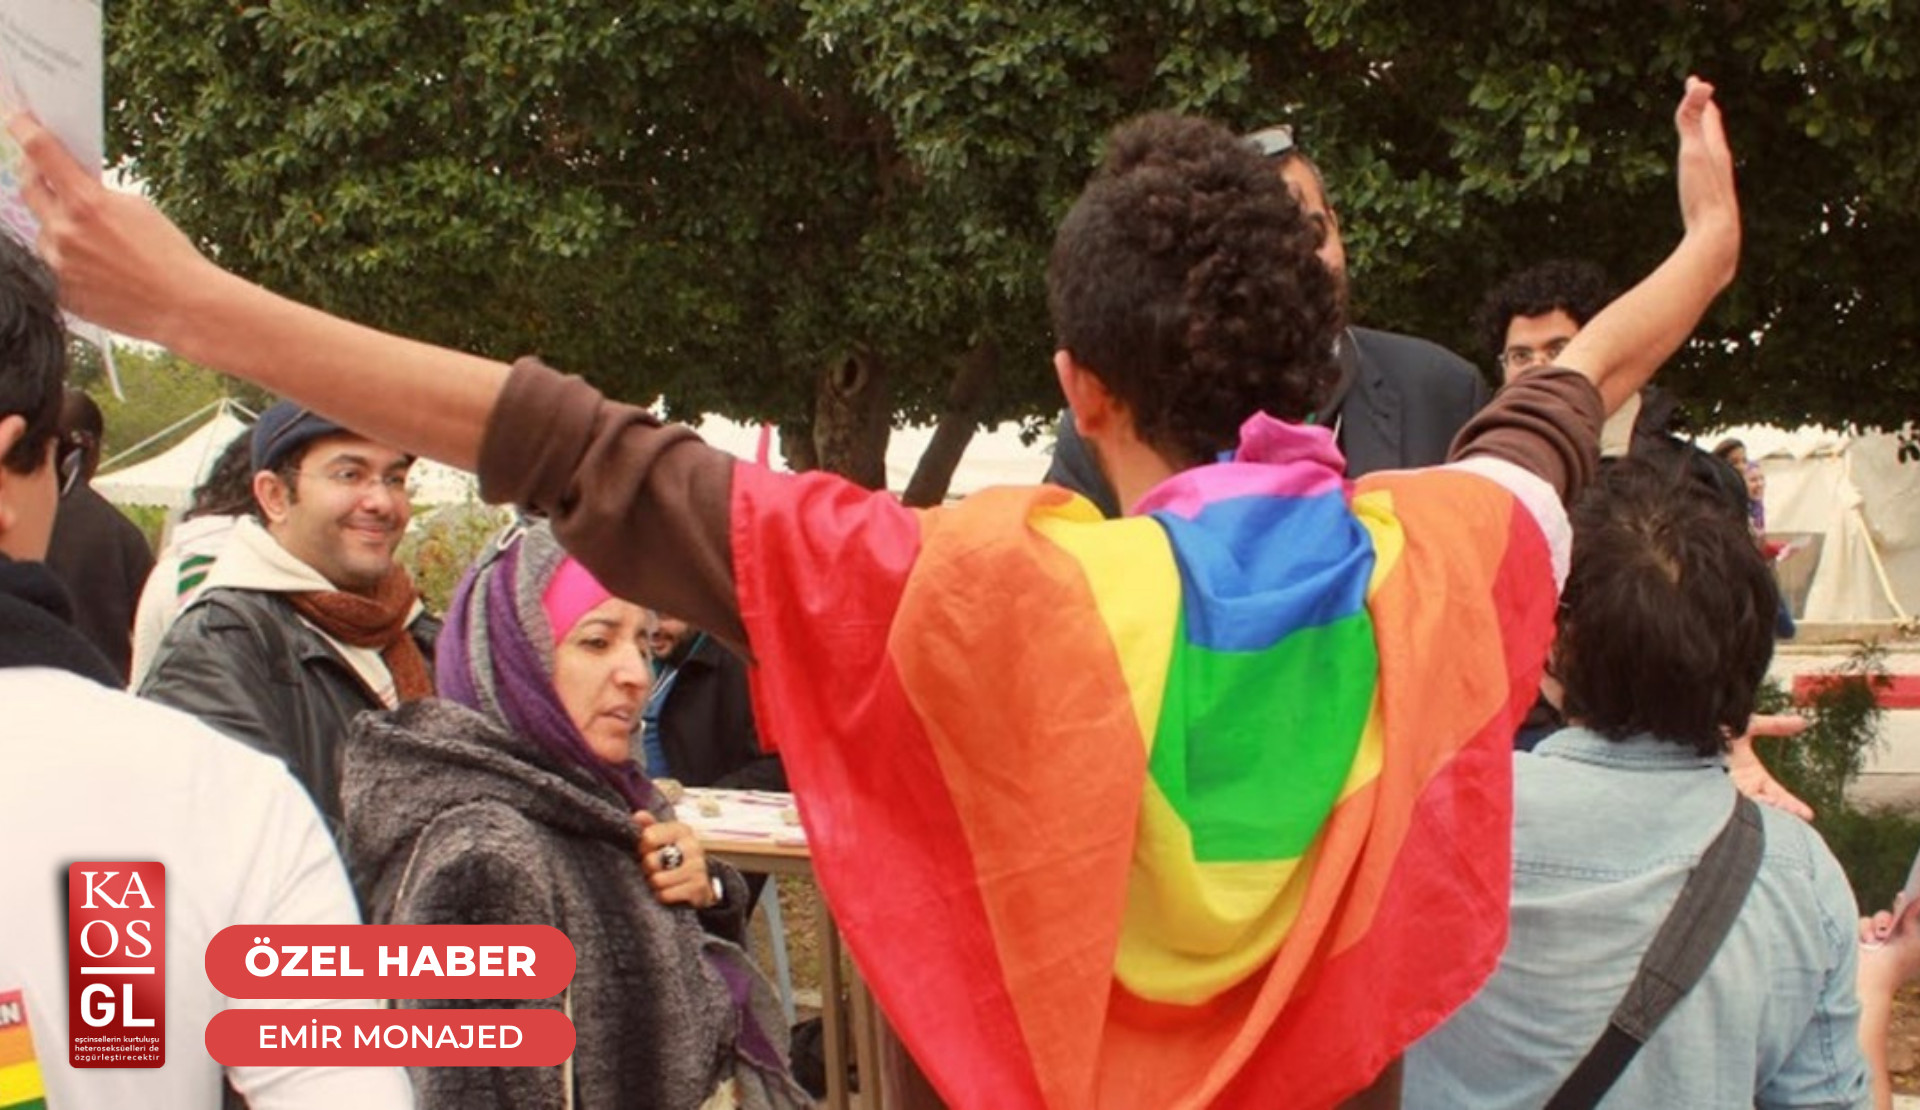 Suriye’den Mısır’a eşcinsel bir gencin deneyimleri: “Mısır’daki flört uygulamalarında güvenlik güçleri LGBTİ+’lara tuzak kuruyor” | Kaos GL - LGBTİ+ Haber Portalı Haber